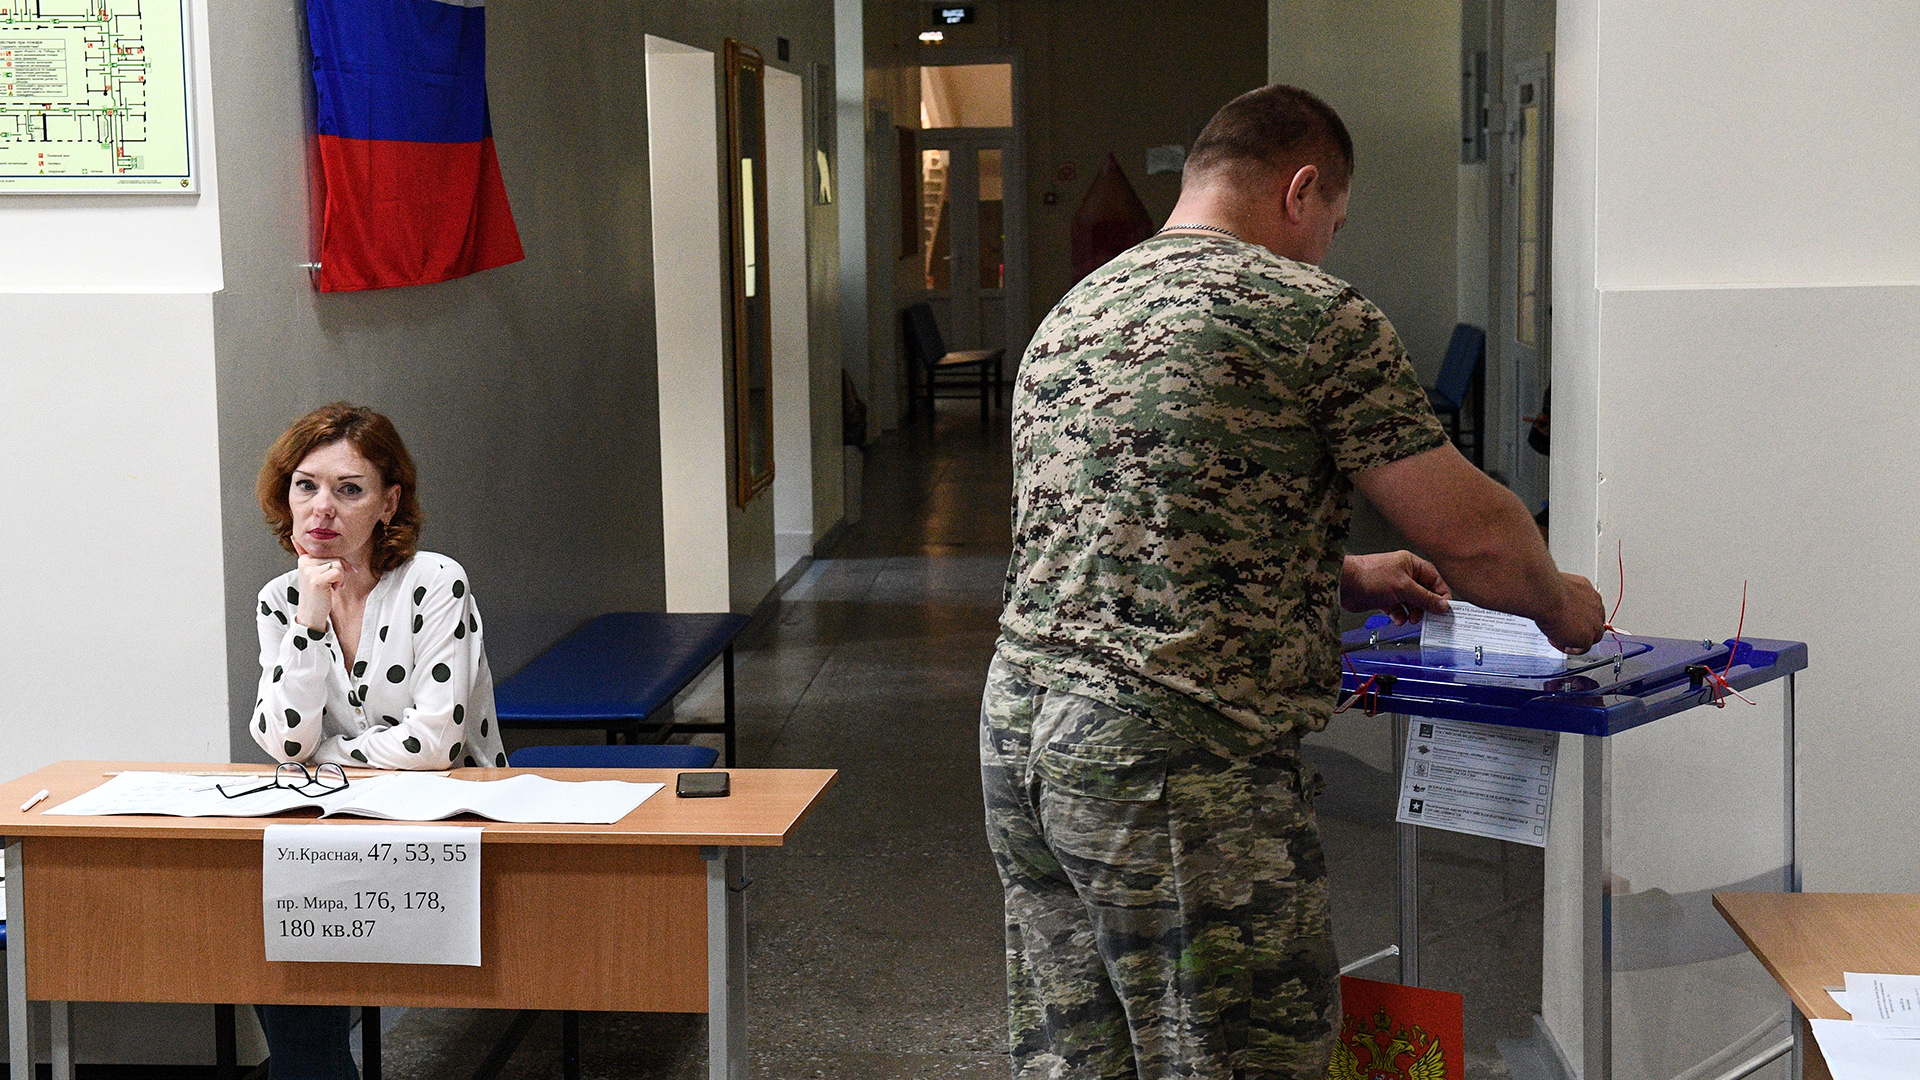 Das Bild von der russischen Staatsagentur Tass zeigt einen Mann bei der Stimmabgabe in einem Wahllokal.